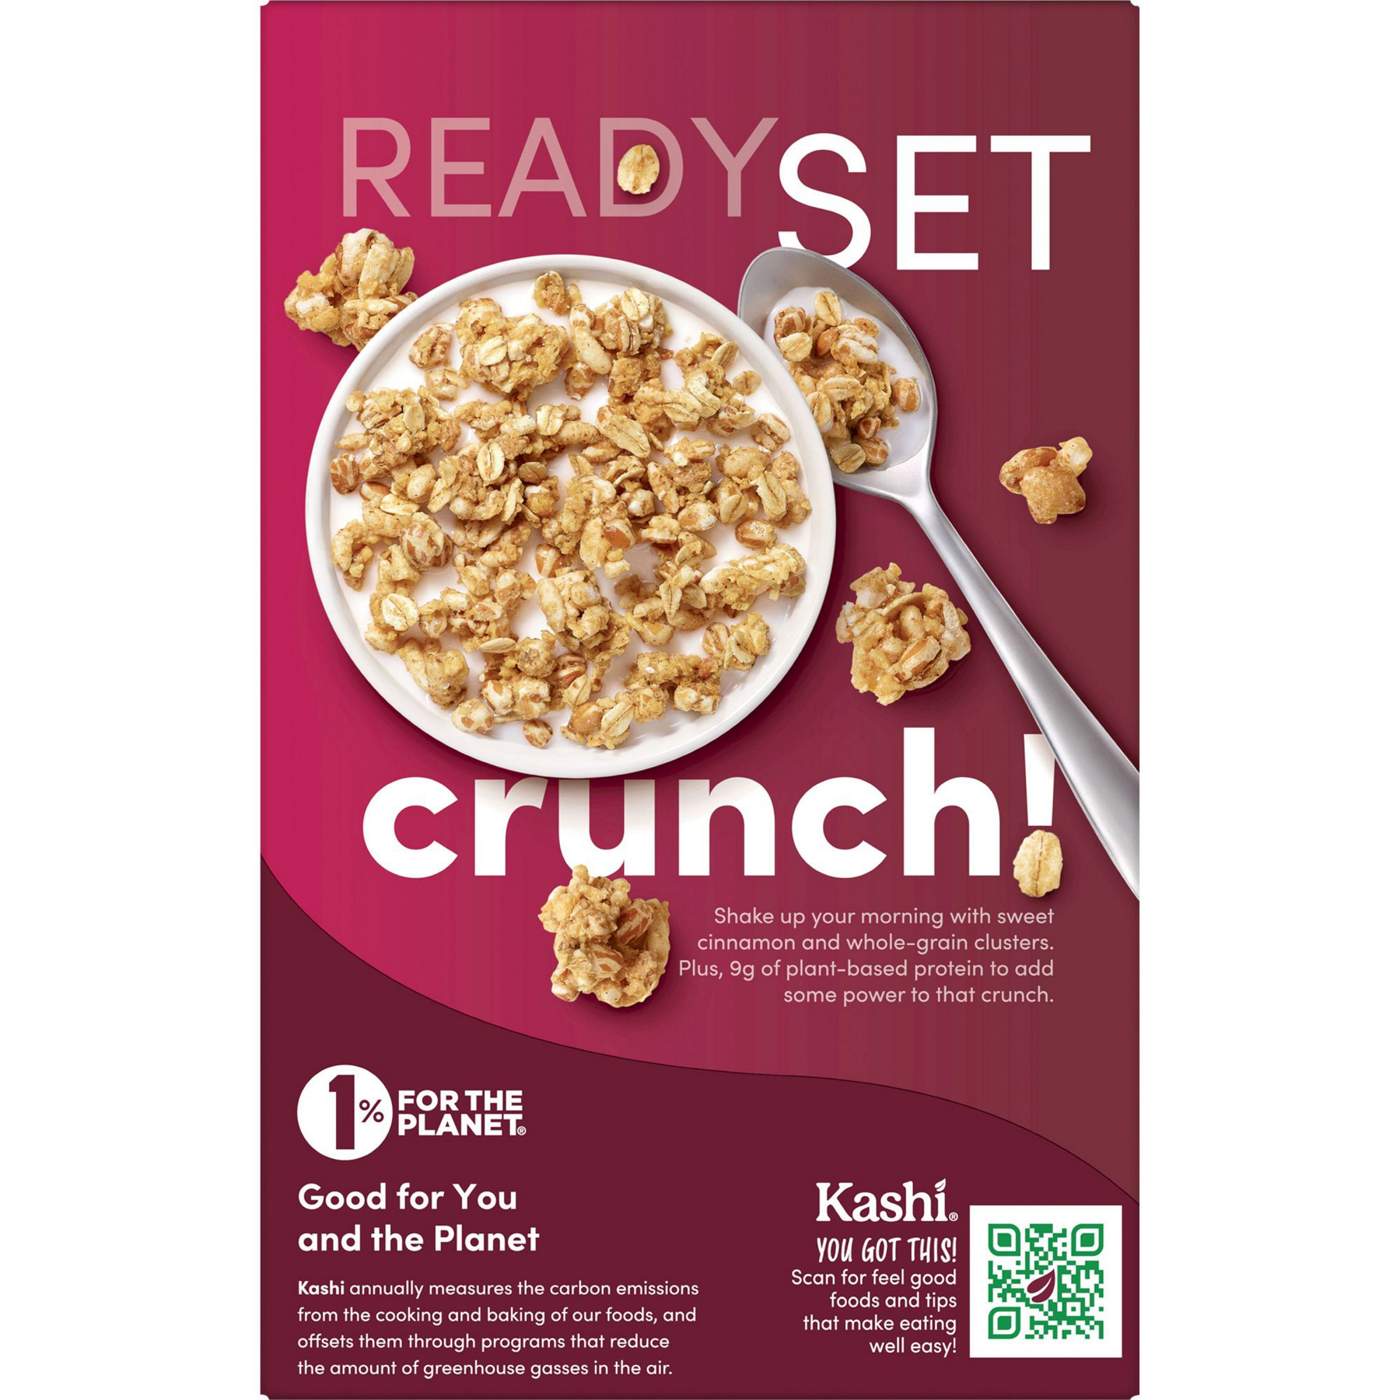 Kashi GO Crunch Breakfast Cereal; image 8 of 11